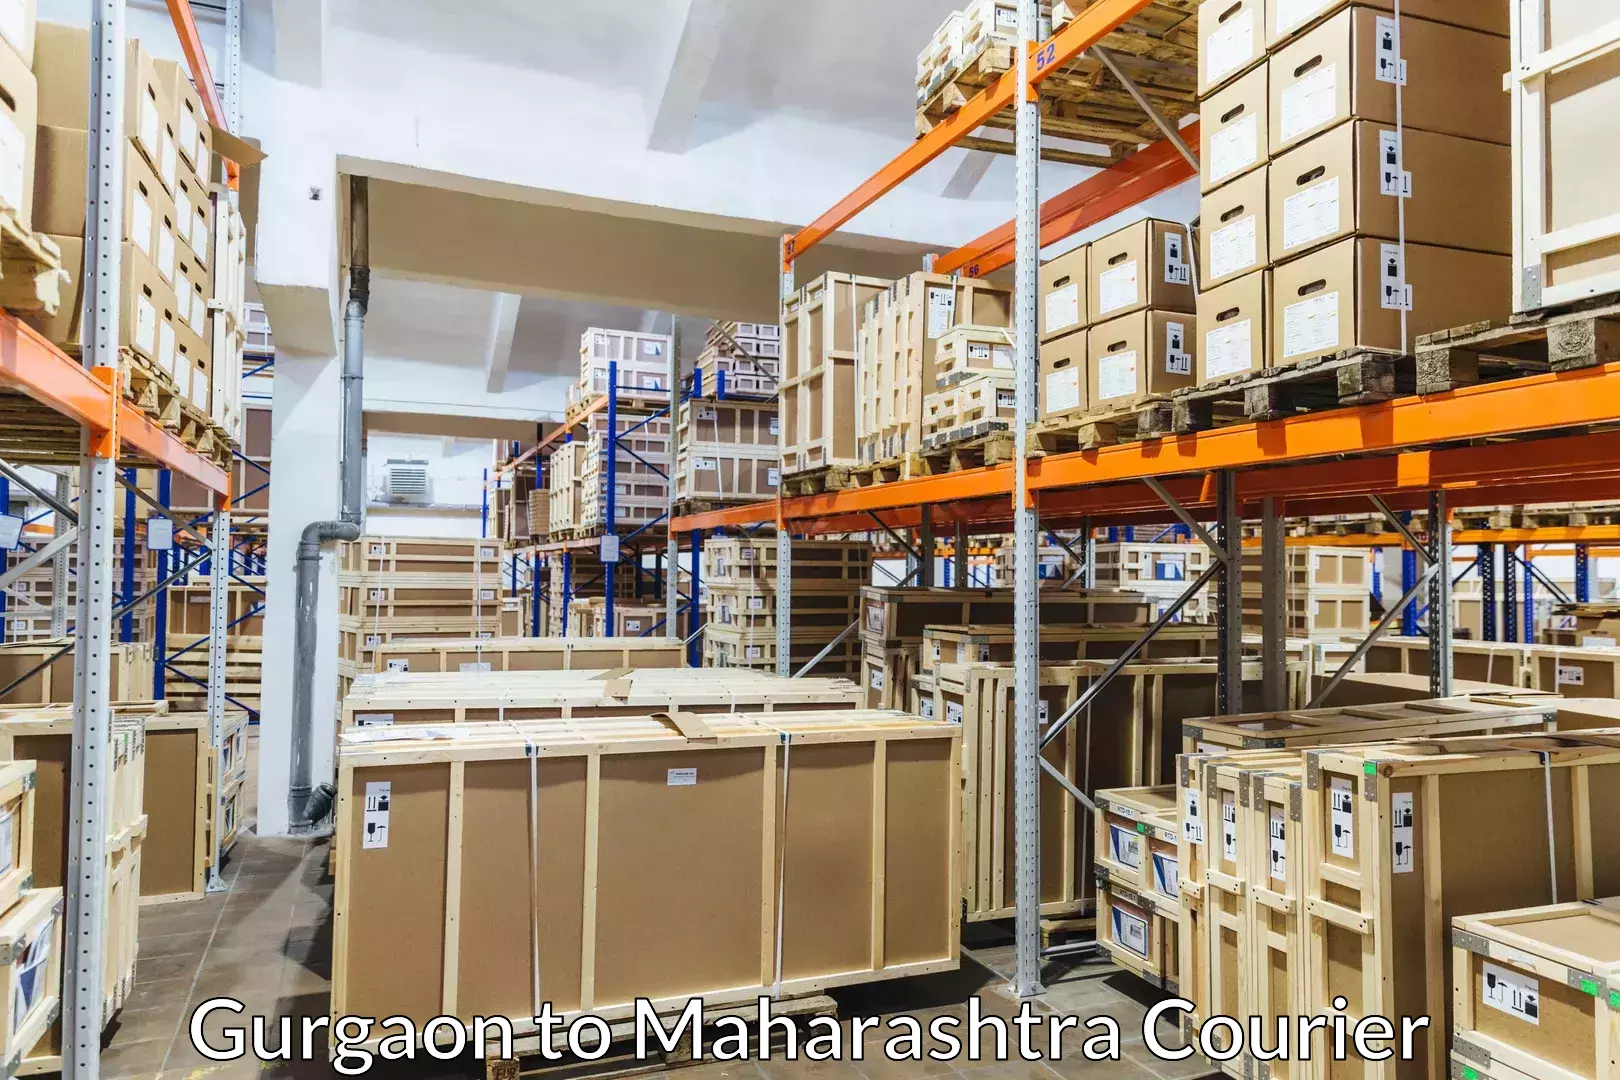 Luggage transport deals Gurgaon to Tata Institute of Social Sciences Mumbai